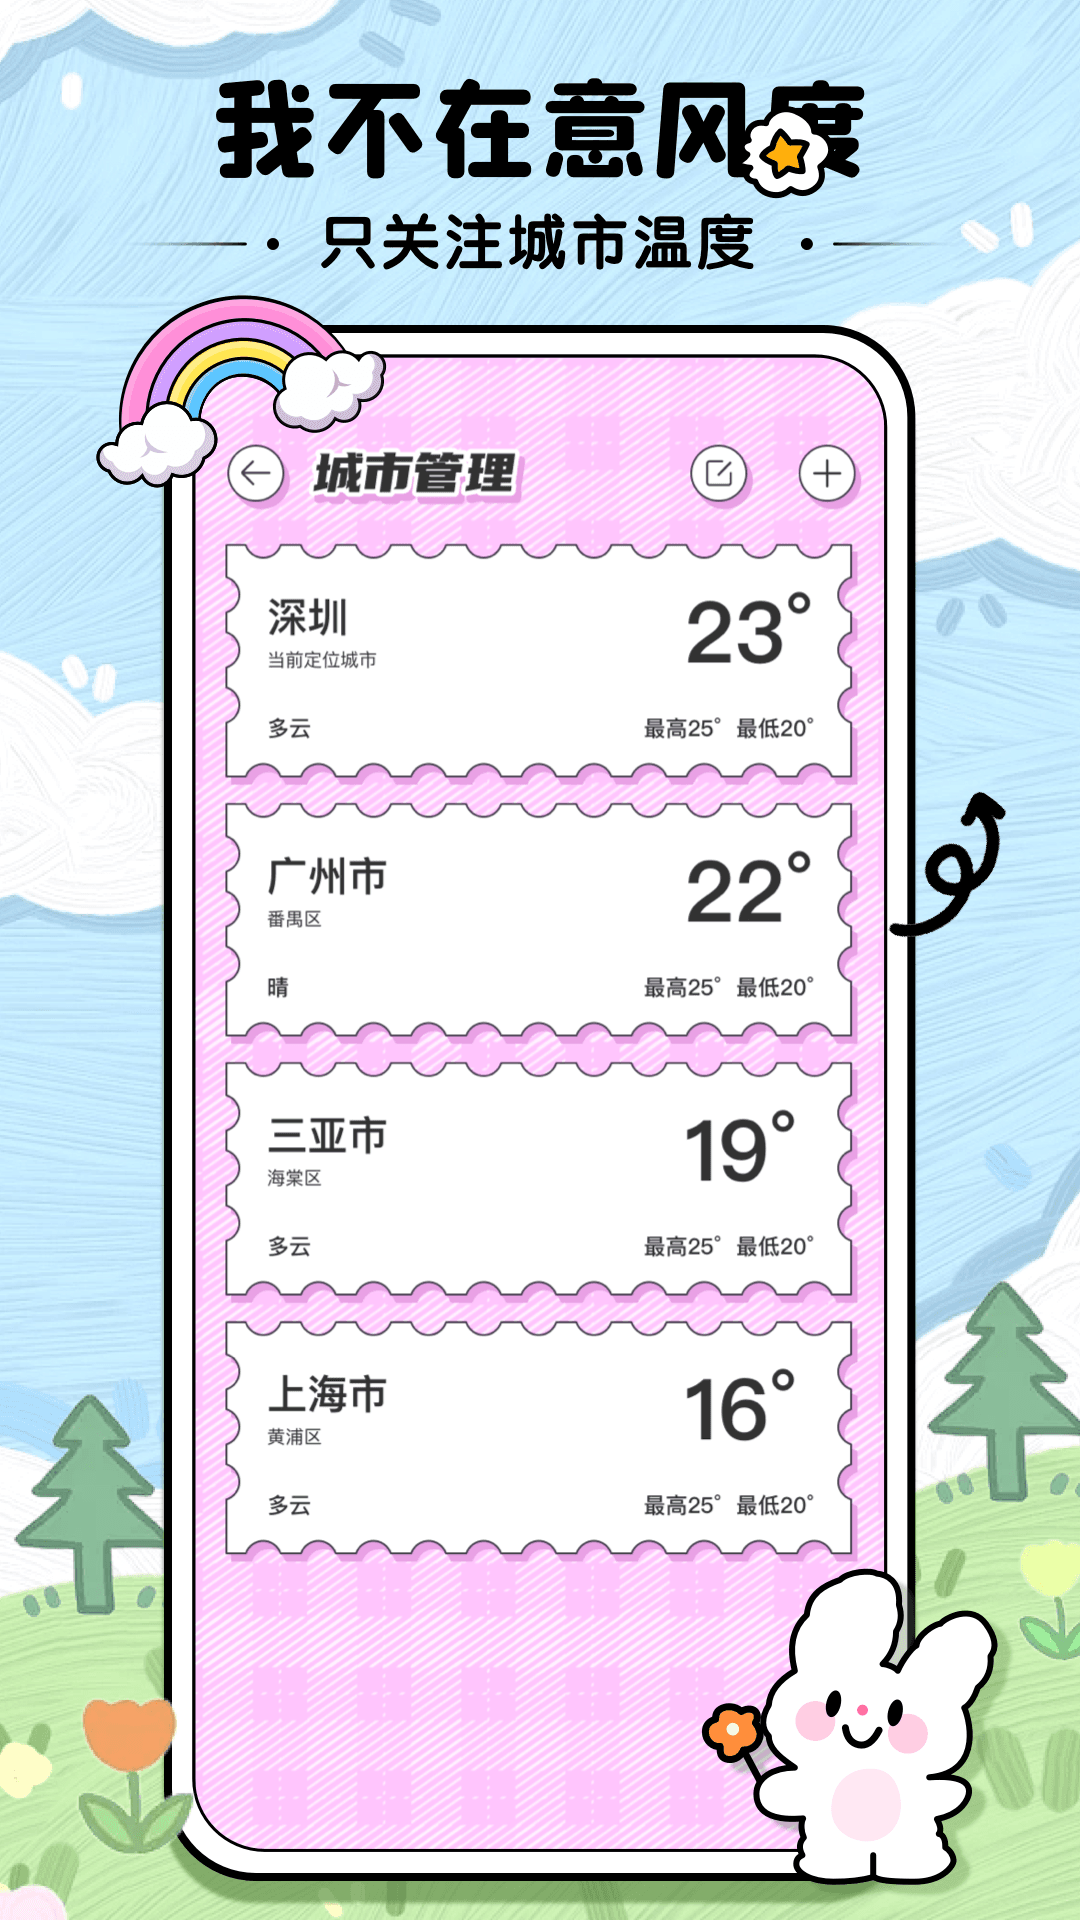 米糕天气物语app下载,米糕天气物语app官方版 v1.0.4